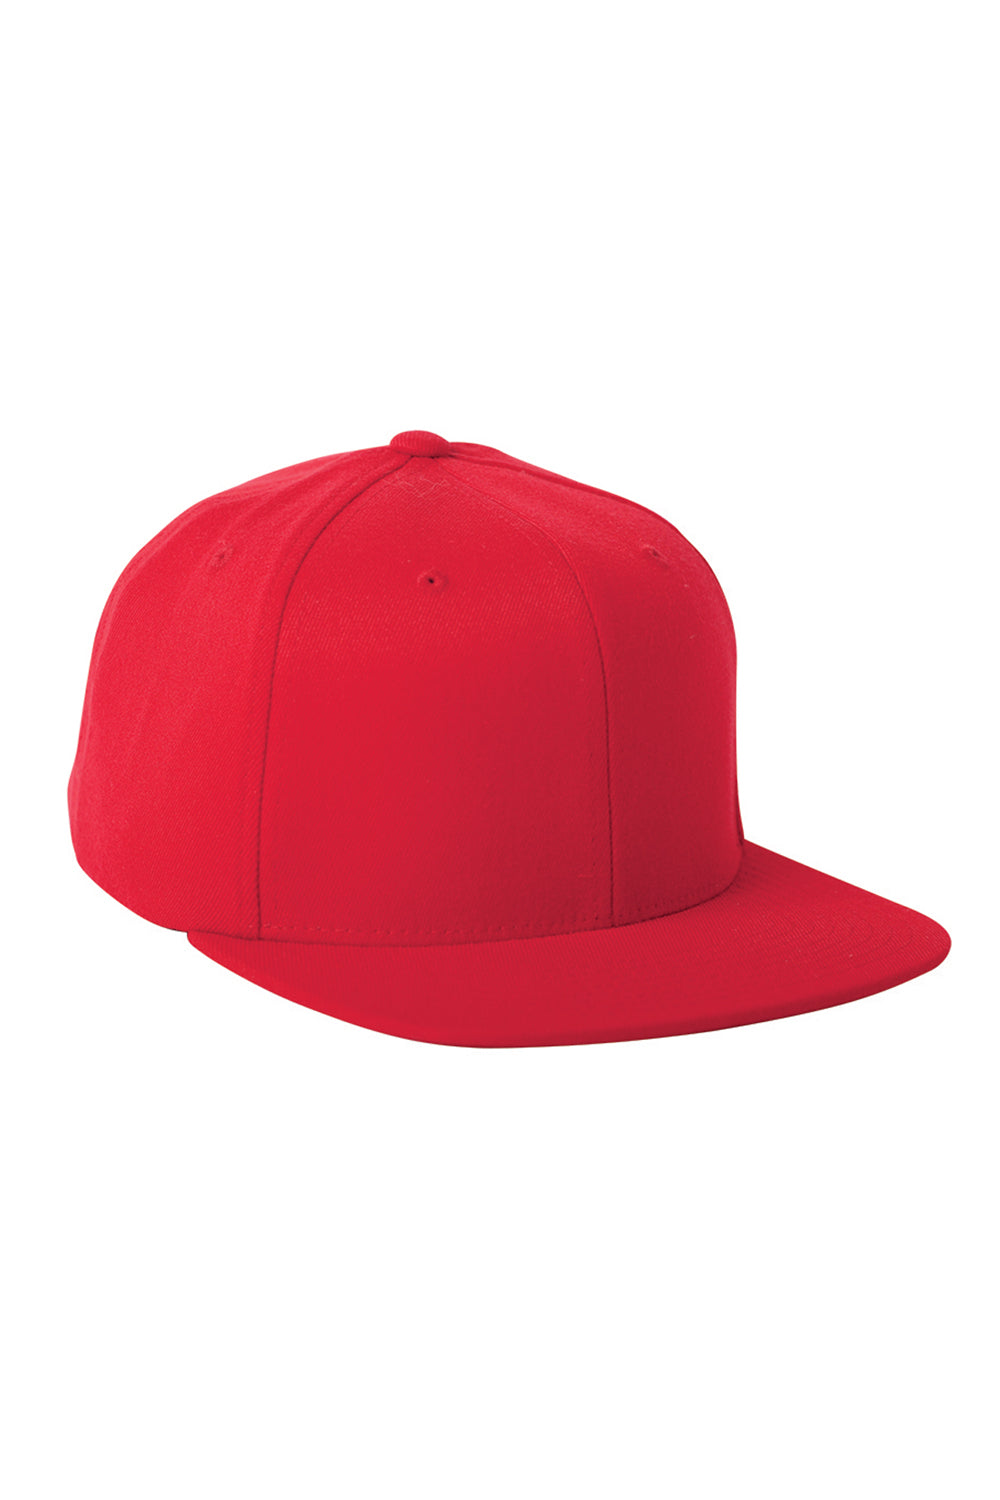 Flexfit 110F Mens Adjustable Hat Red Front